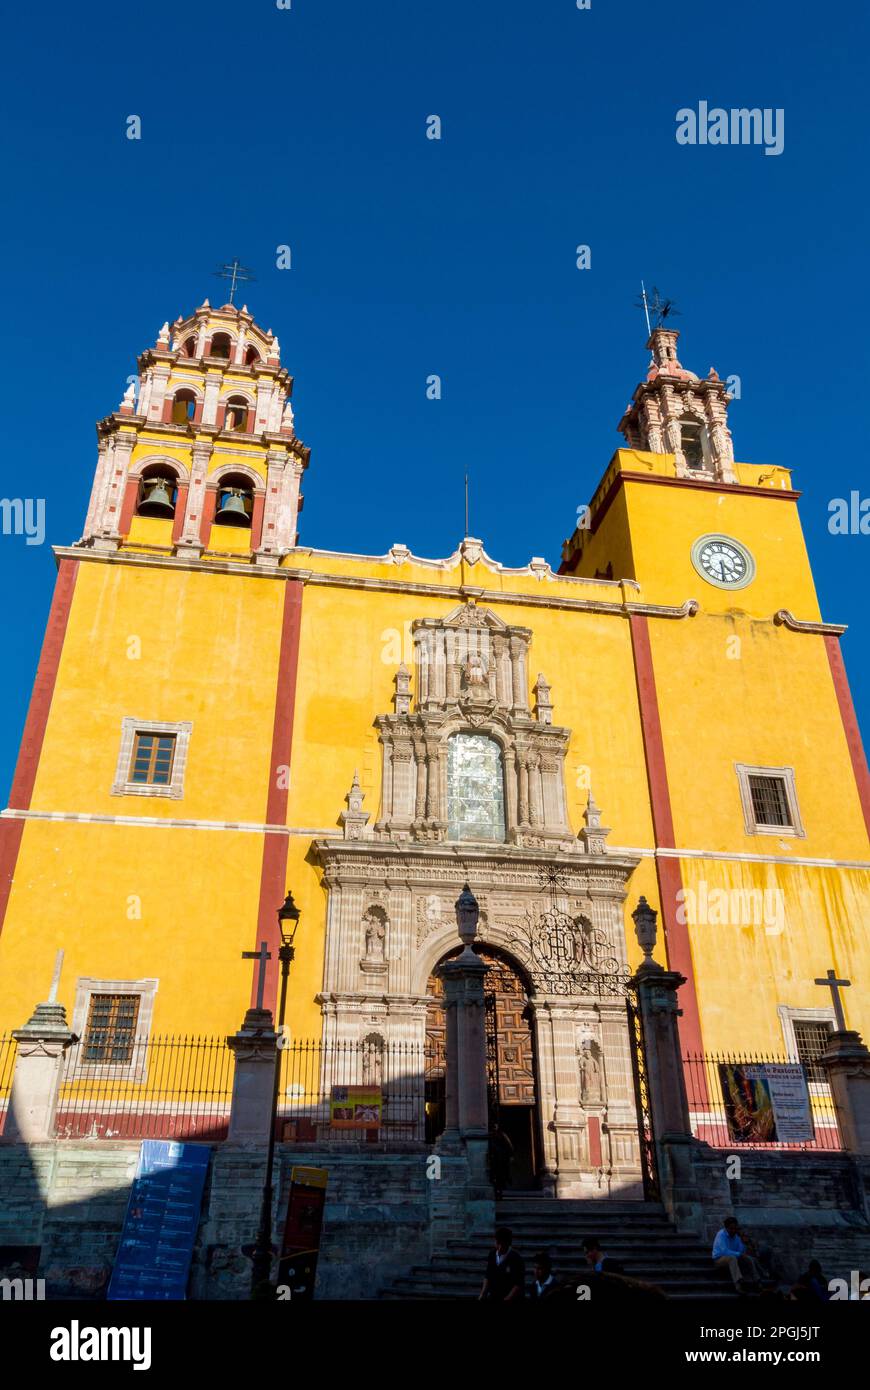 Guanajuato, Guanajuato, Mexico, Basilica de Nuestra Senora de Guanajuato at a plaza de la paz Stock Photo